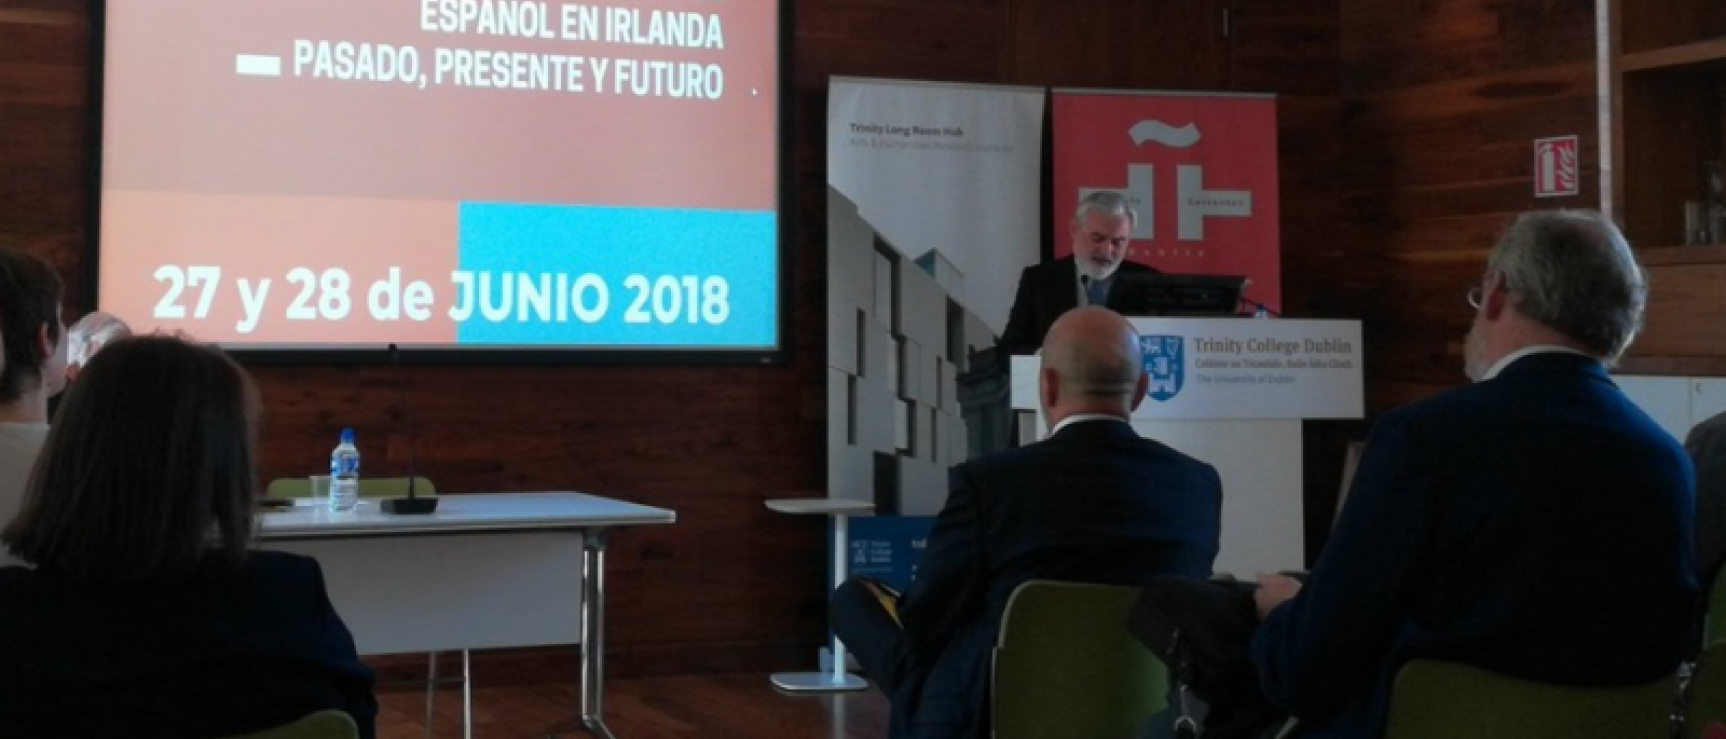 Darío Villanueva inaugura en Dublín un simposio sobre el Español en Irlanda